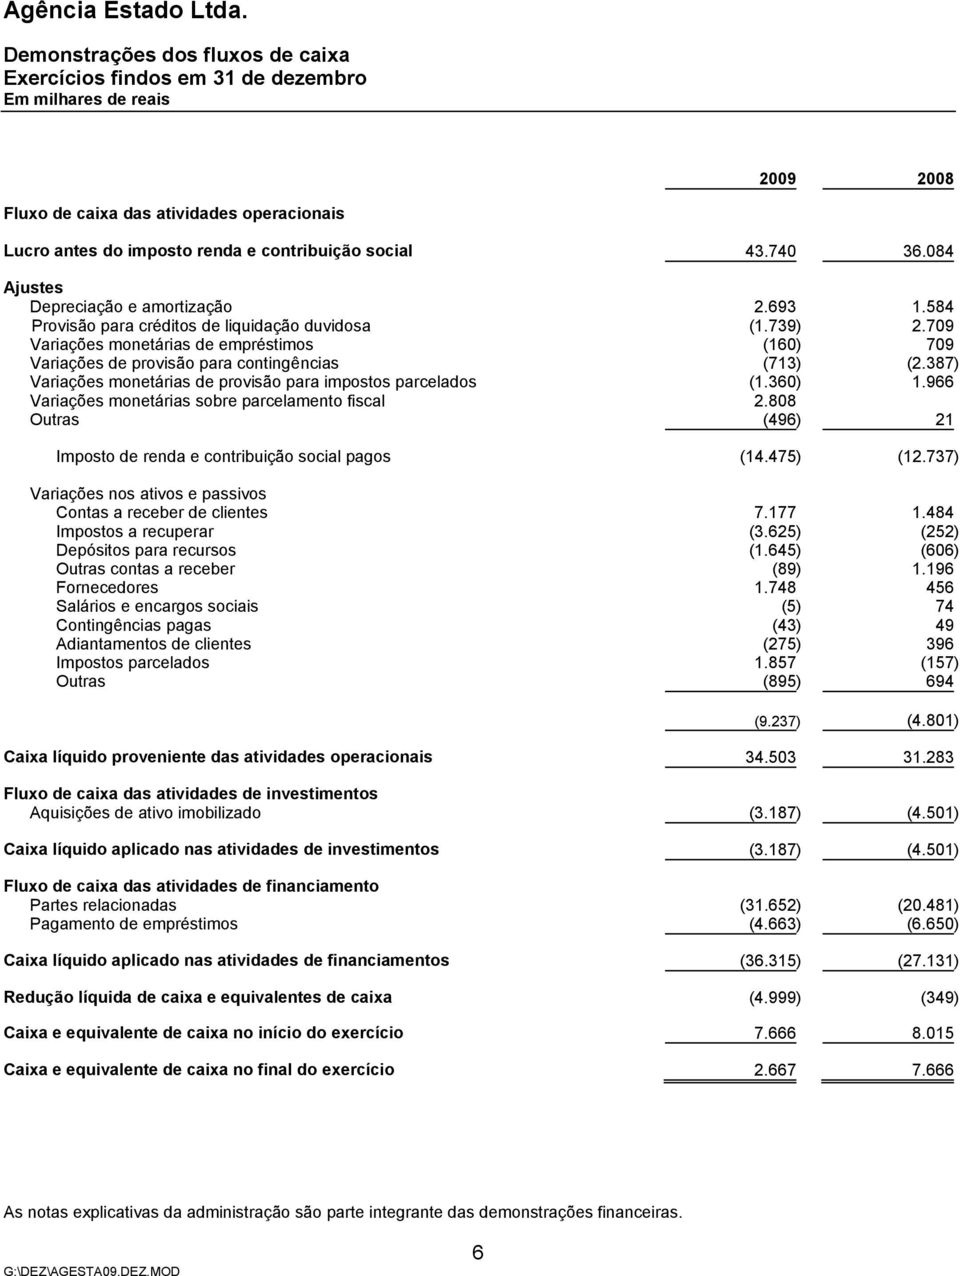 709 Variações monetárias de empréstimos (160) 709 Variações de provisão para contingências (713) (2.387) Variações monetárias de provisão para impostos parcelados (1.360) 1.